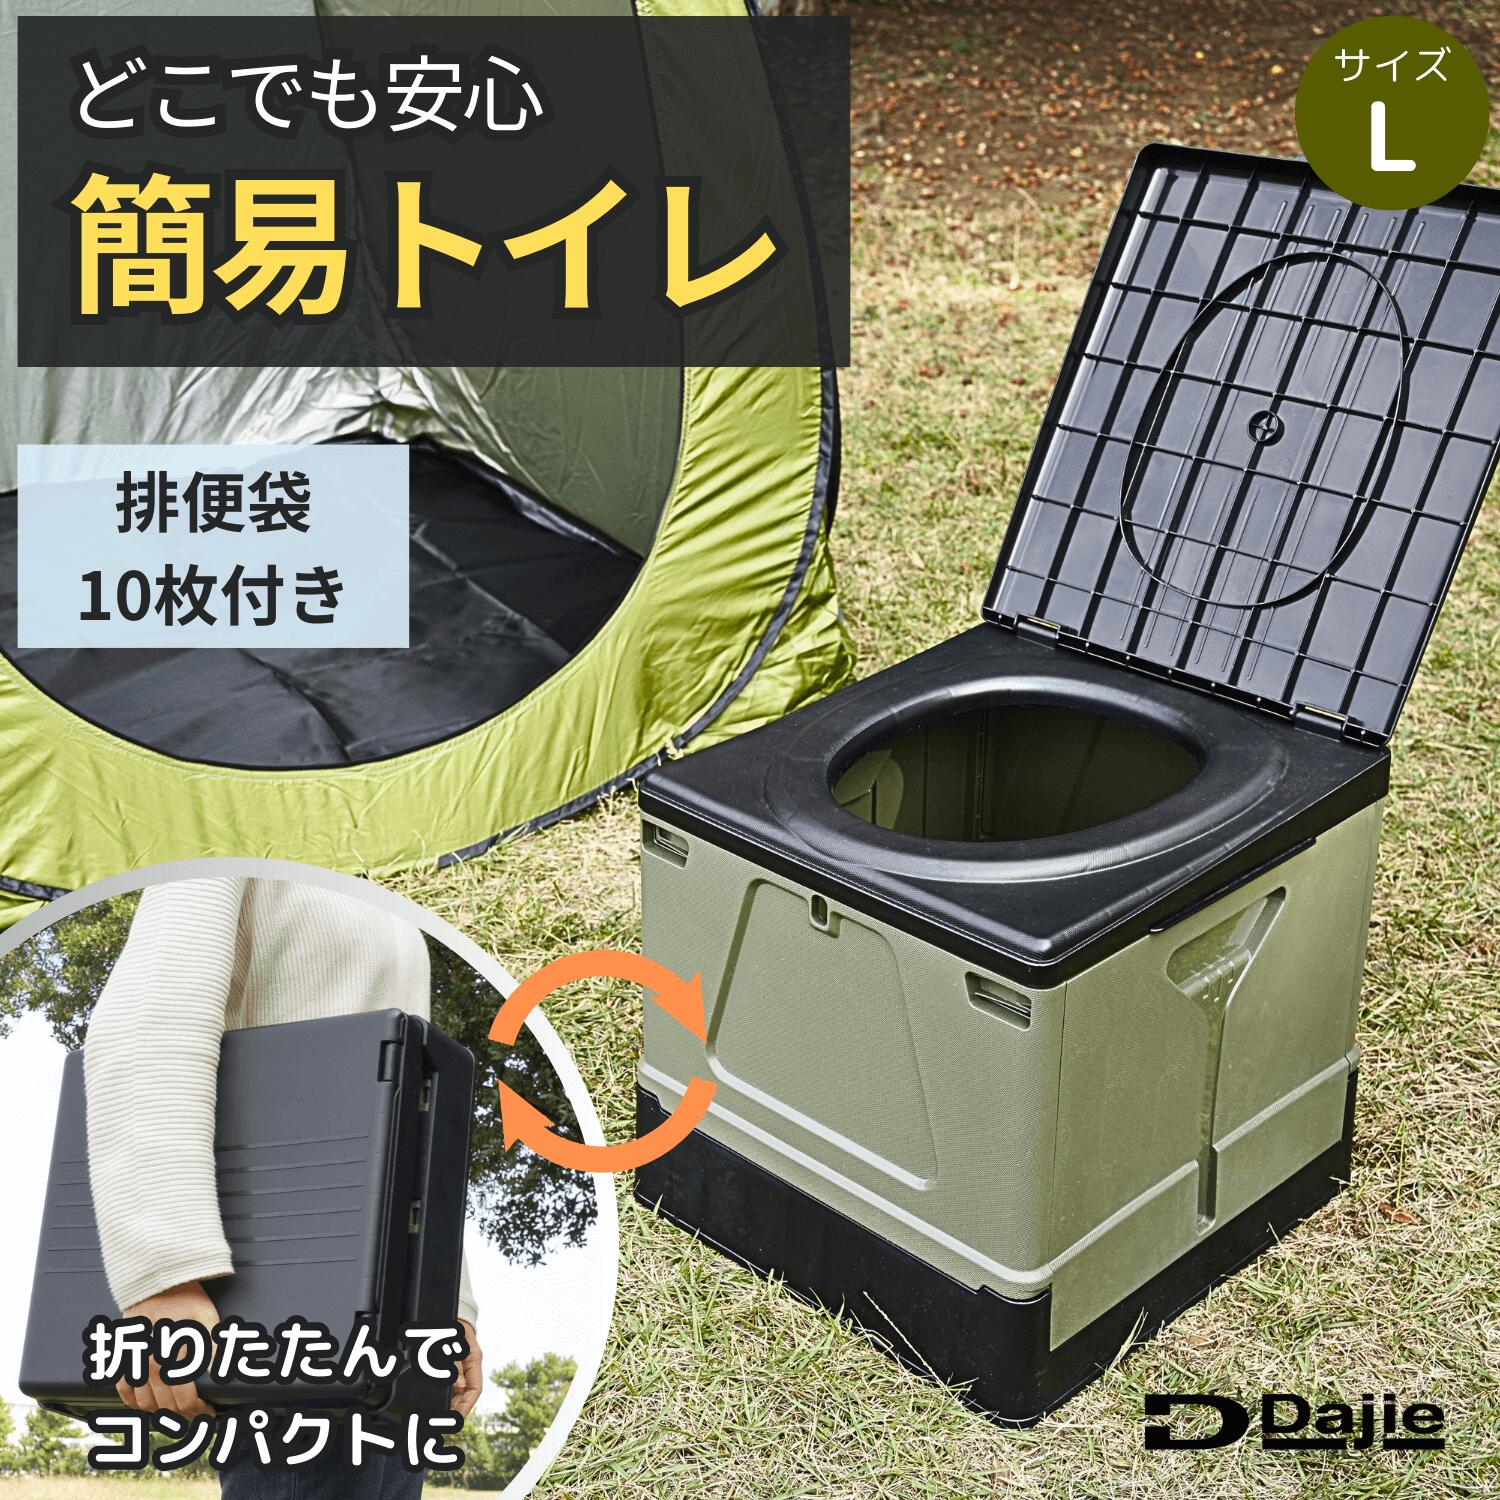 【5月20日限定！60%OFFクーポン】Dajie(ダジエ) スツーレ2 簡易トイレ ポータブルトイレ 携帯トイレ 耐荷重150kg 排便袋10枚入り